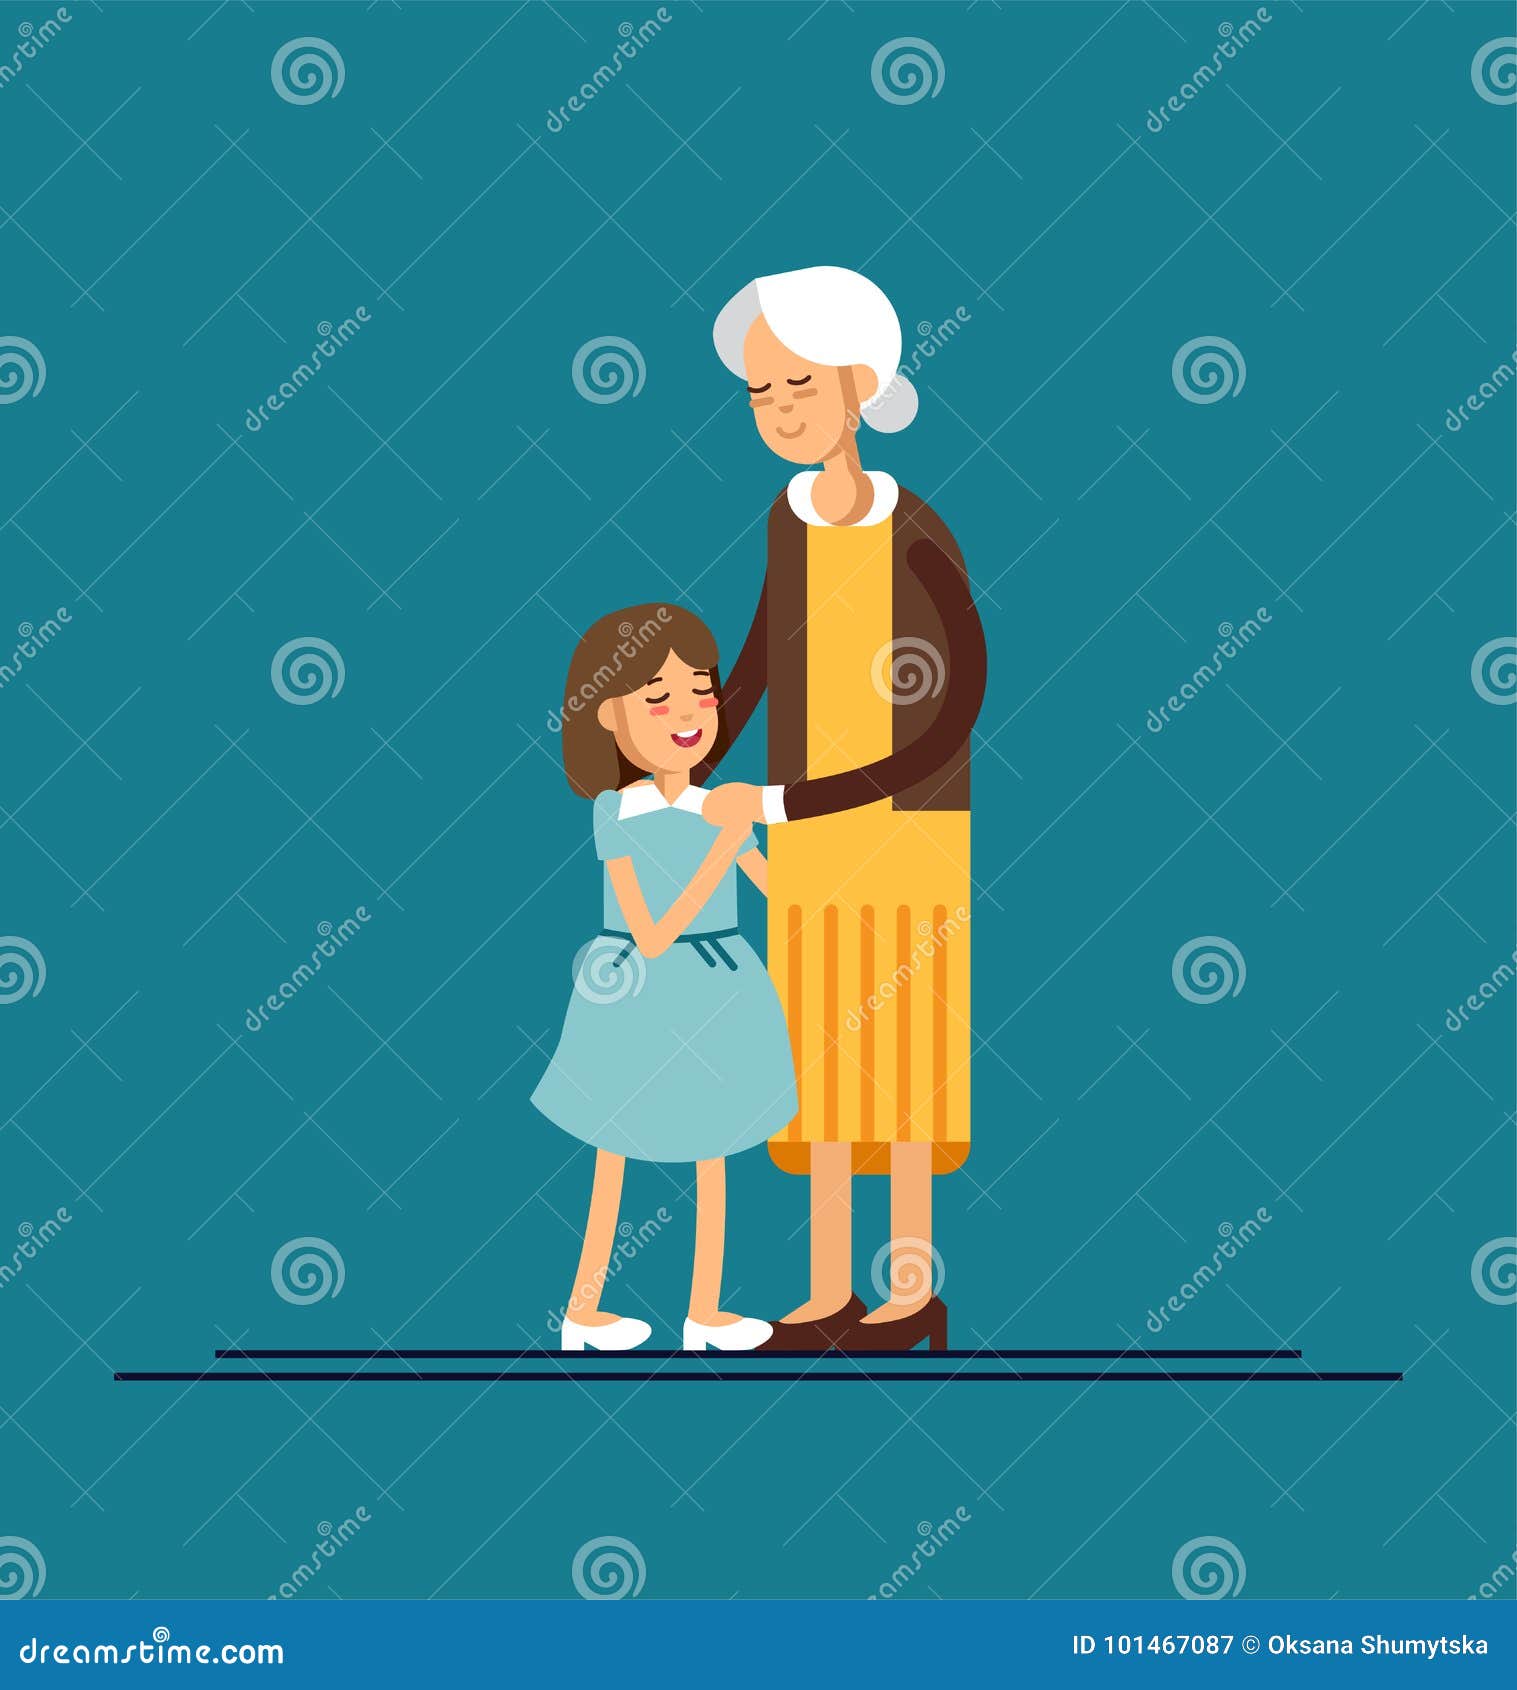 Обнимаю бабушку бабушку мою потому что минус. Обнимите бабушку! Иллюстрации. Бабушка обнимает внучка илюстрация. Бабушка обнимает внука иллюстрация. Бабушка обнимает внучку рисунок.